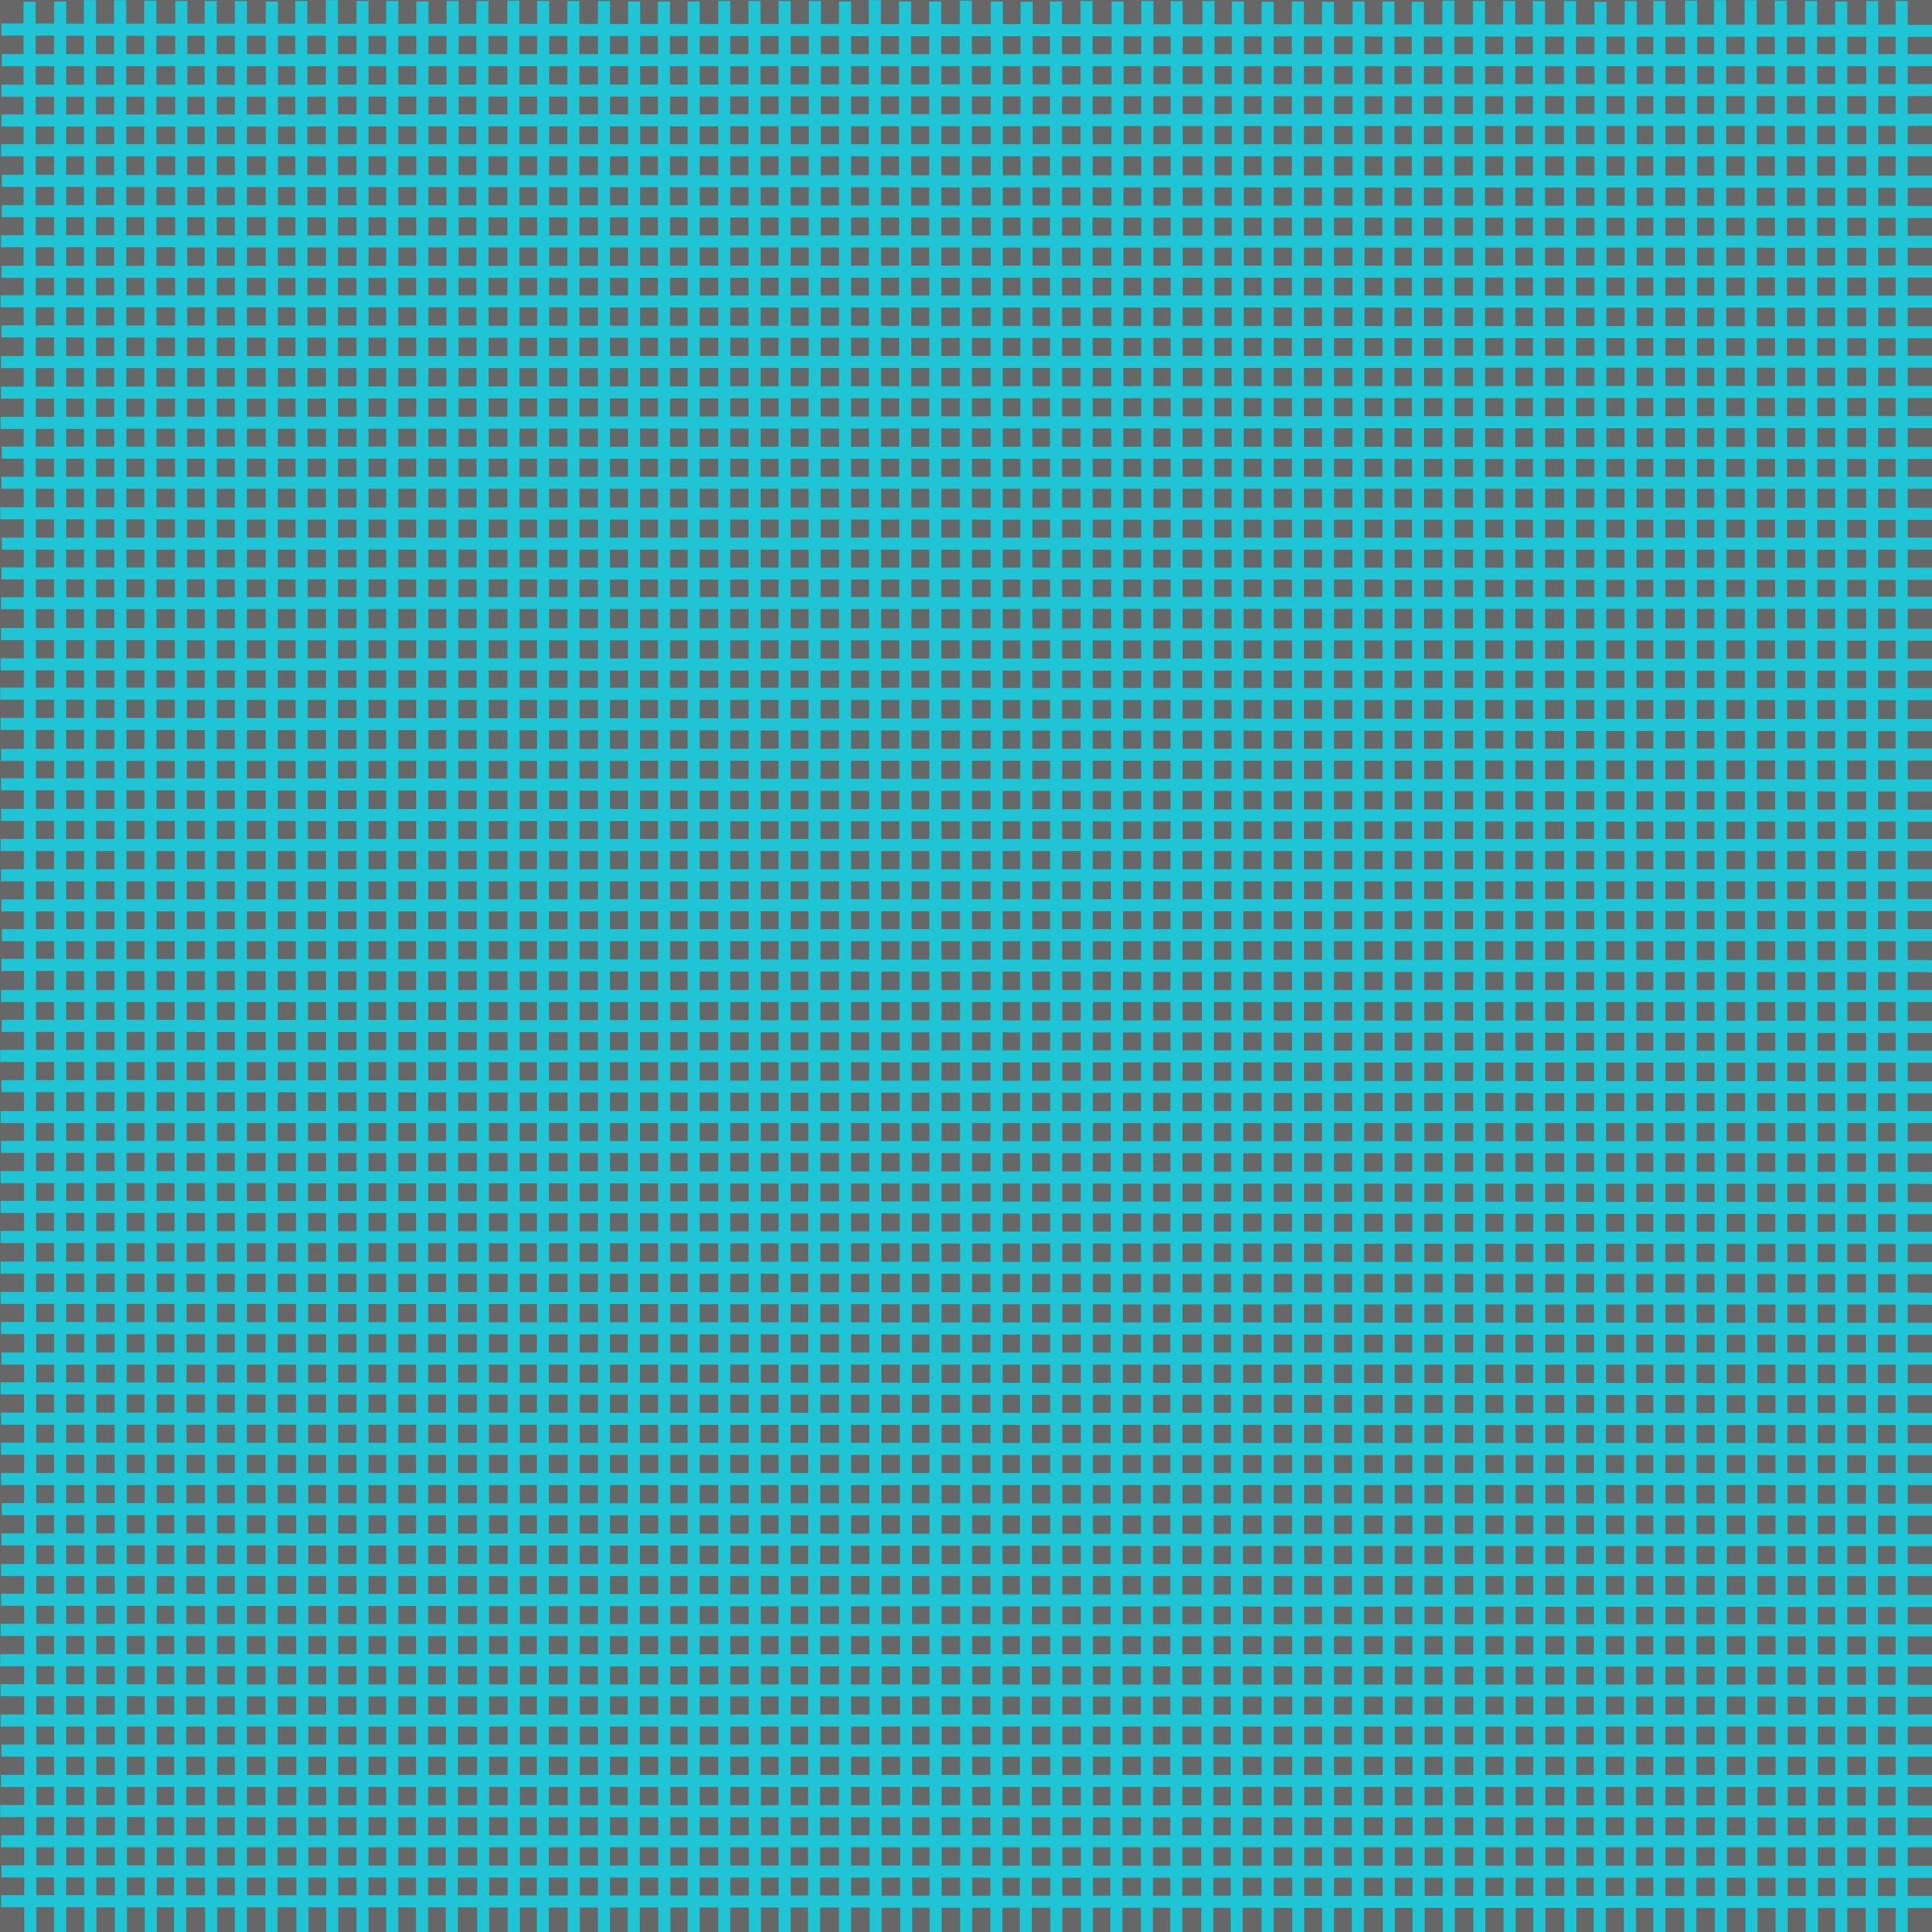 grid 8 (cerulean blue).jpg